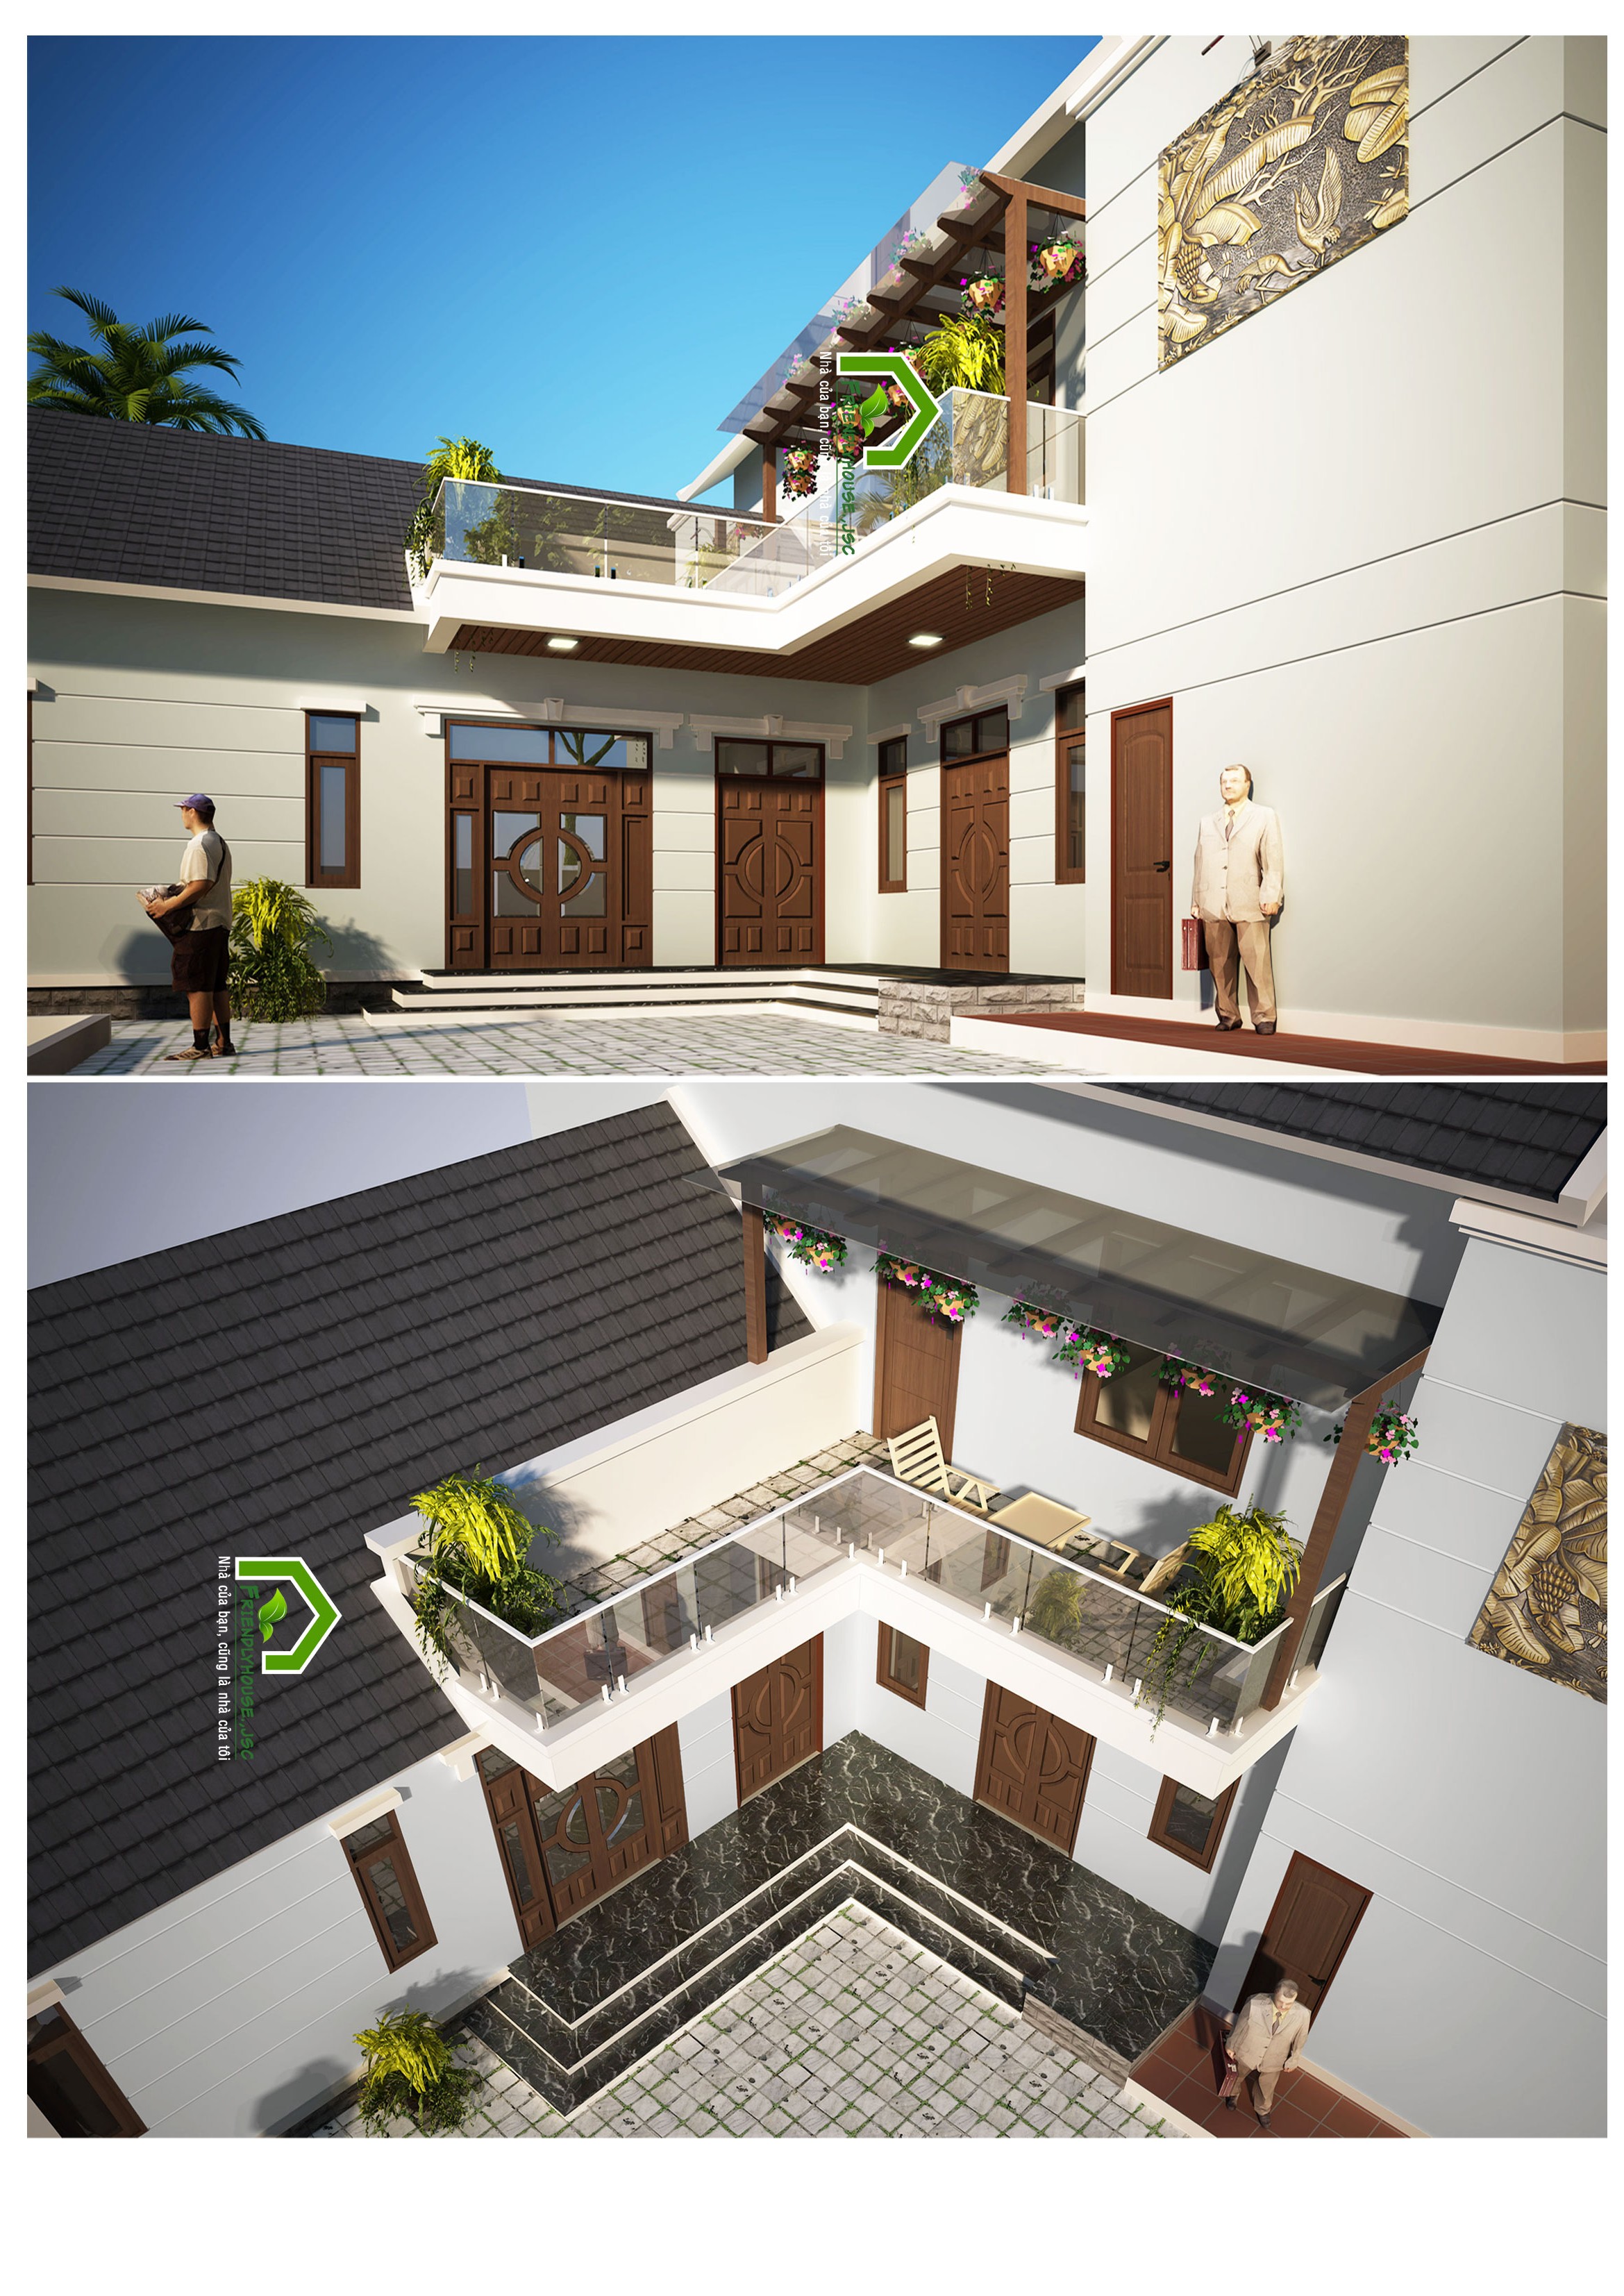 thiết kế Biệt Thự 2 tầng tại Vĩnh Phúc Thiết kế Nhà vườn 1,5 tầng tại Vĩnh Phúc 2 1564397885